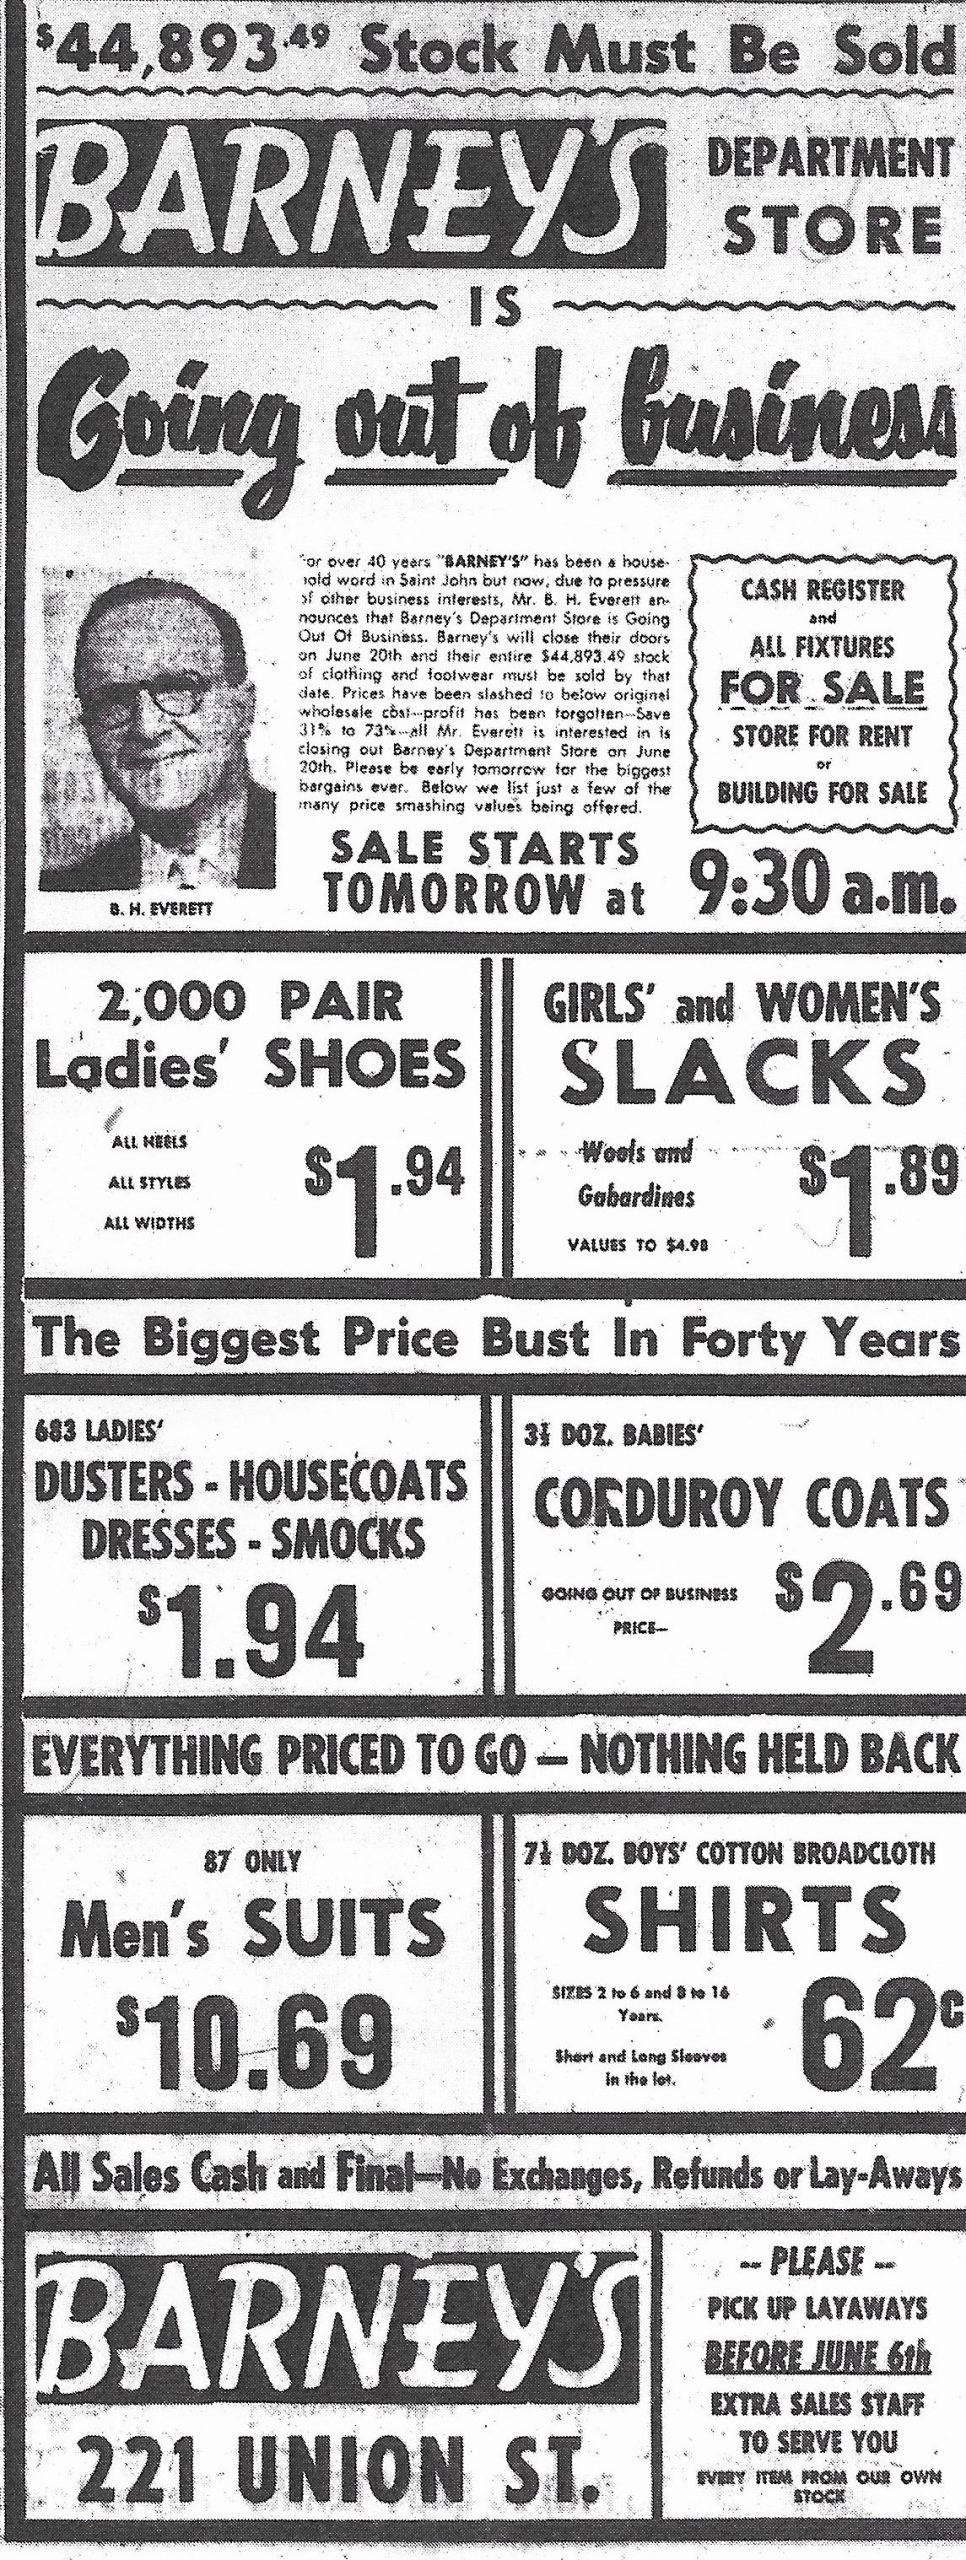 Publicité de presse intitulée « Barney’s Department Store is Going Out of Business » avec une liste de vêtements et de chaussures pour hommes et femmes.